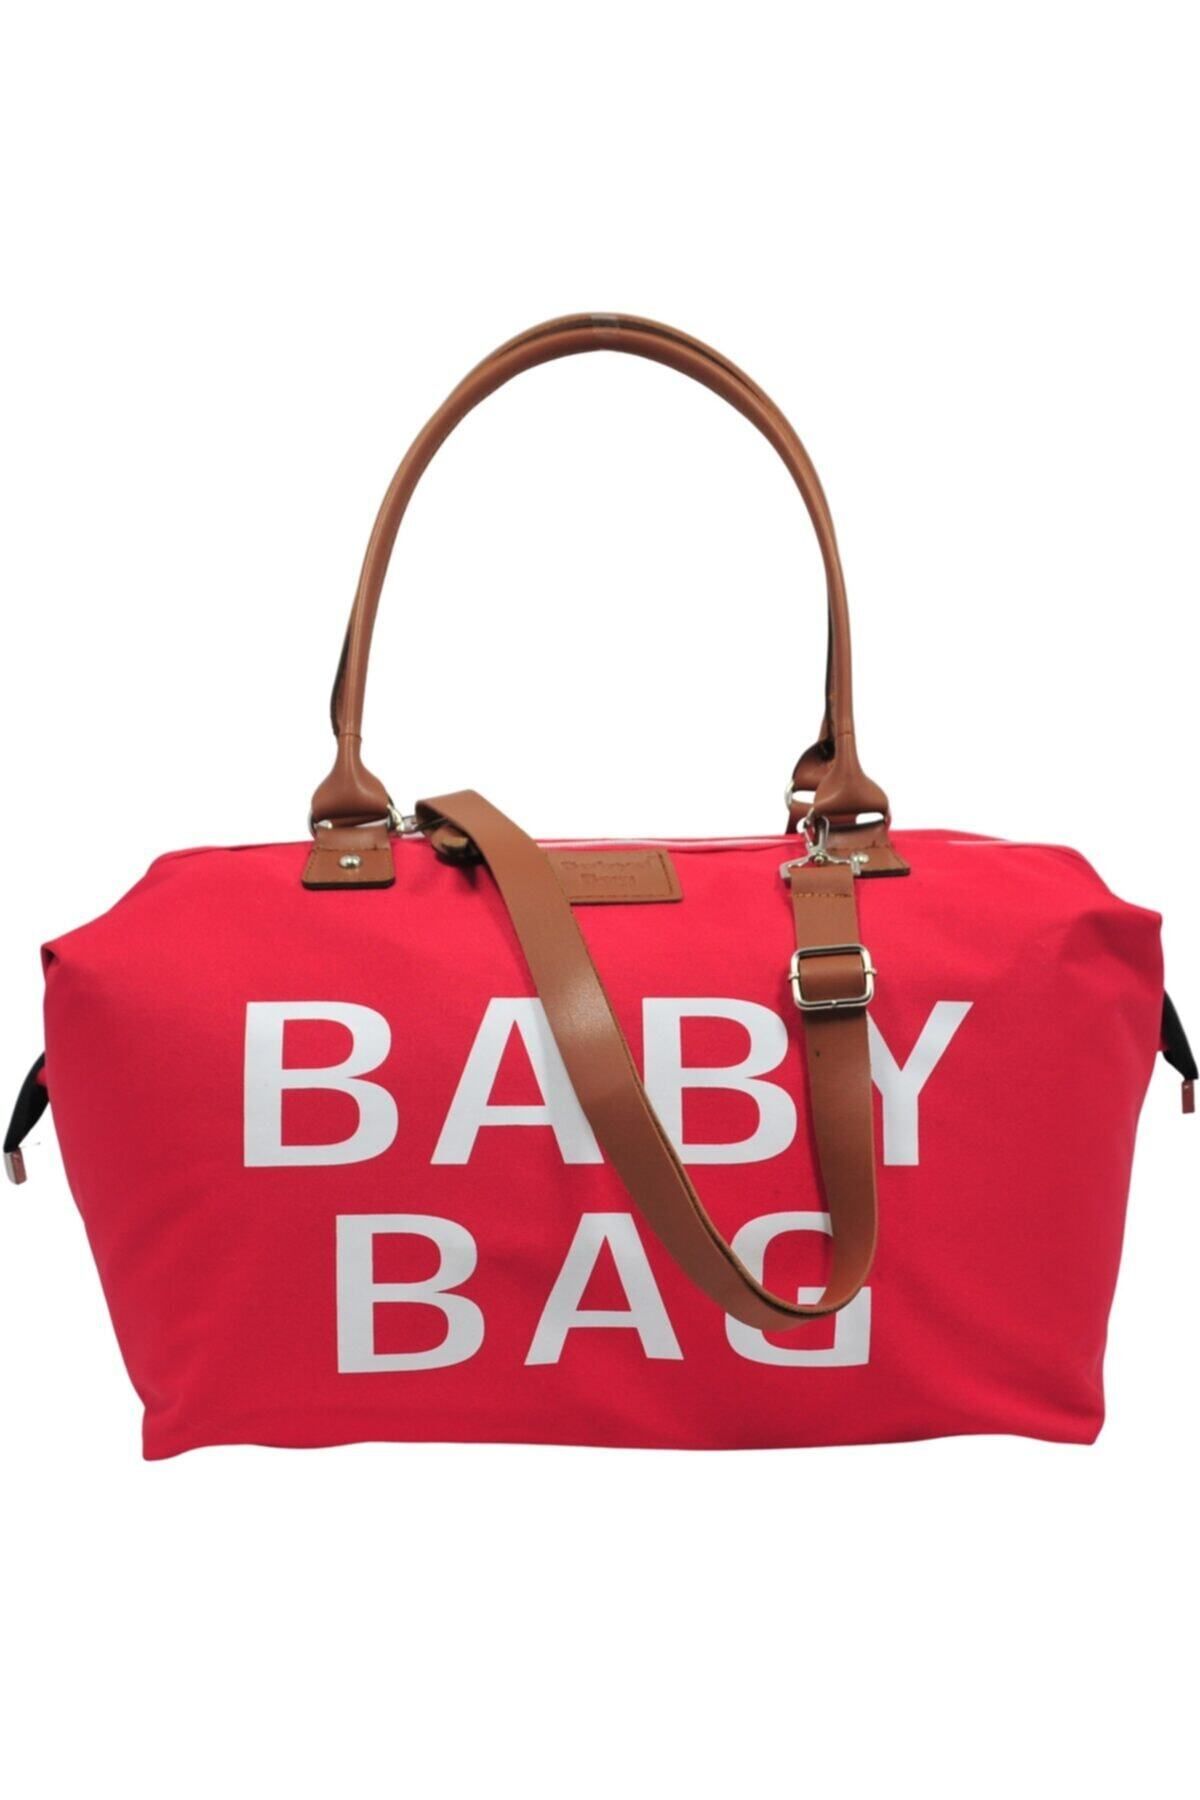 Babysi Baby Bag Tasarım Kırmızı Anne Bebek Bakım Ve Kadın Çantası